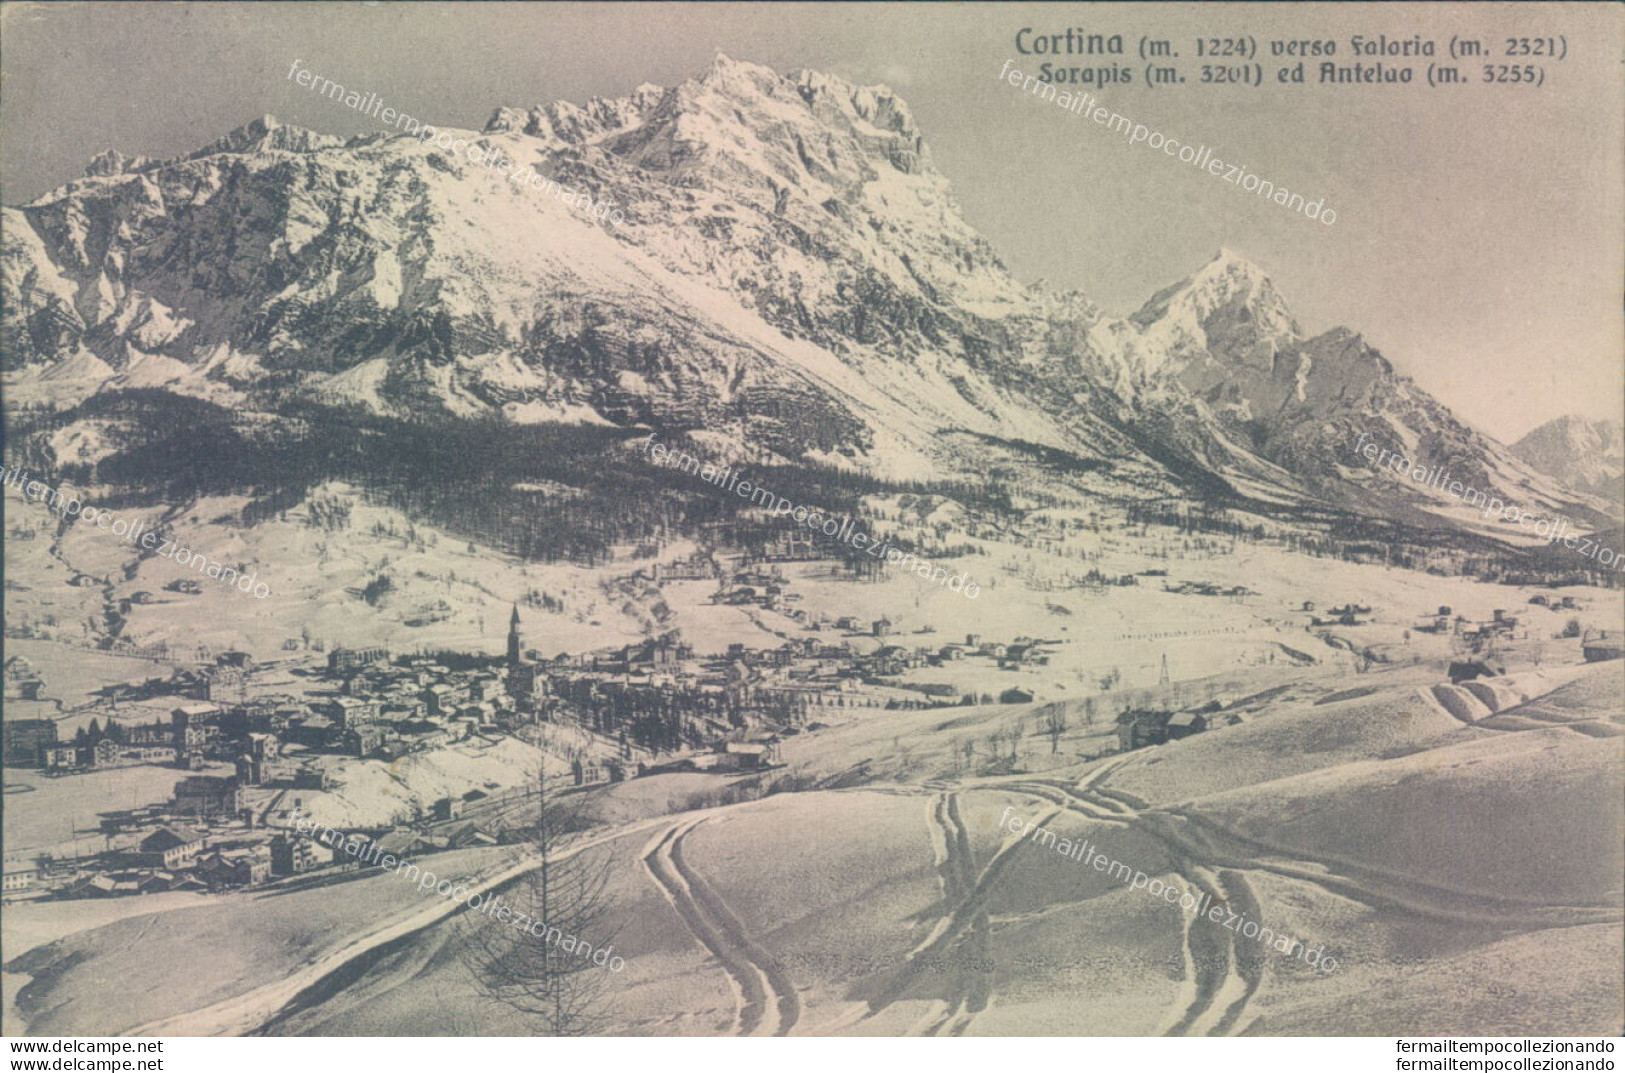 V348 Cartolina Cortina Verso Foloria Sorapis 1929 Provincia Di Belluno - Belluno